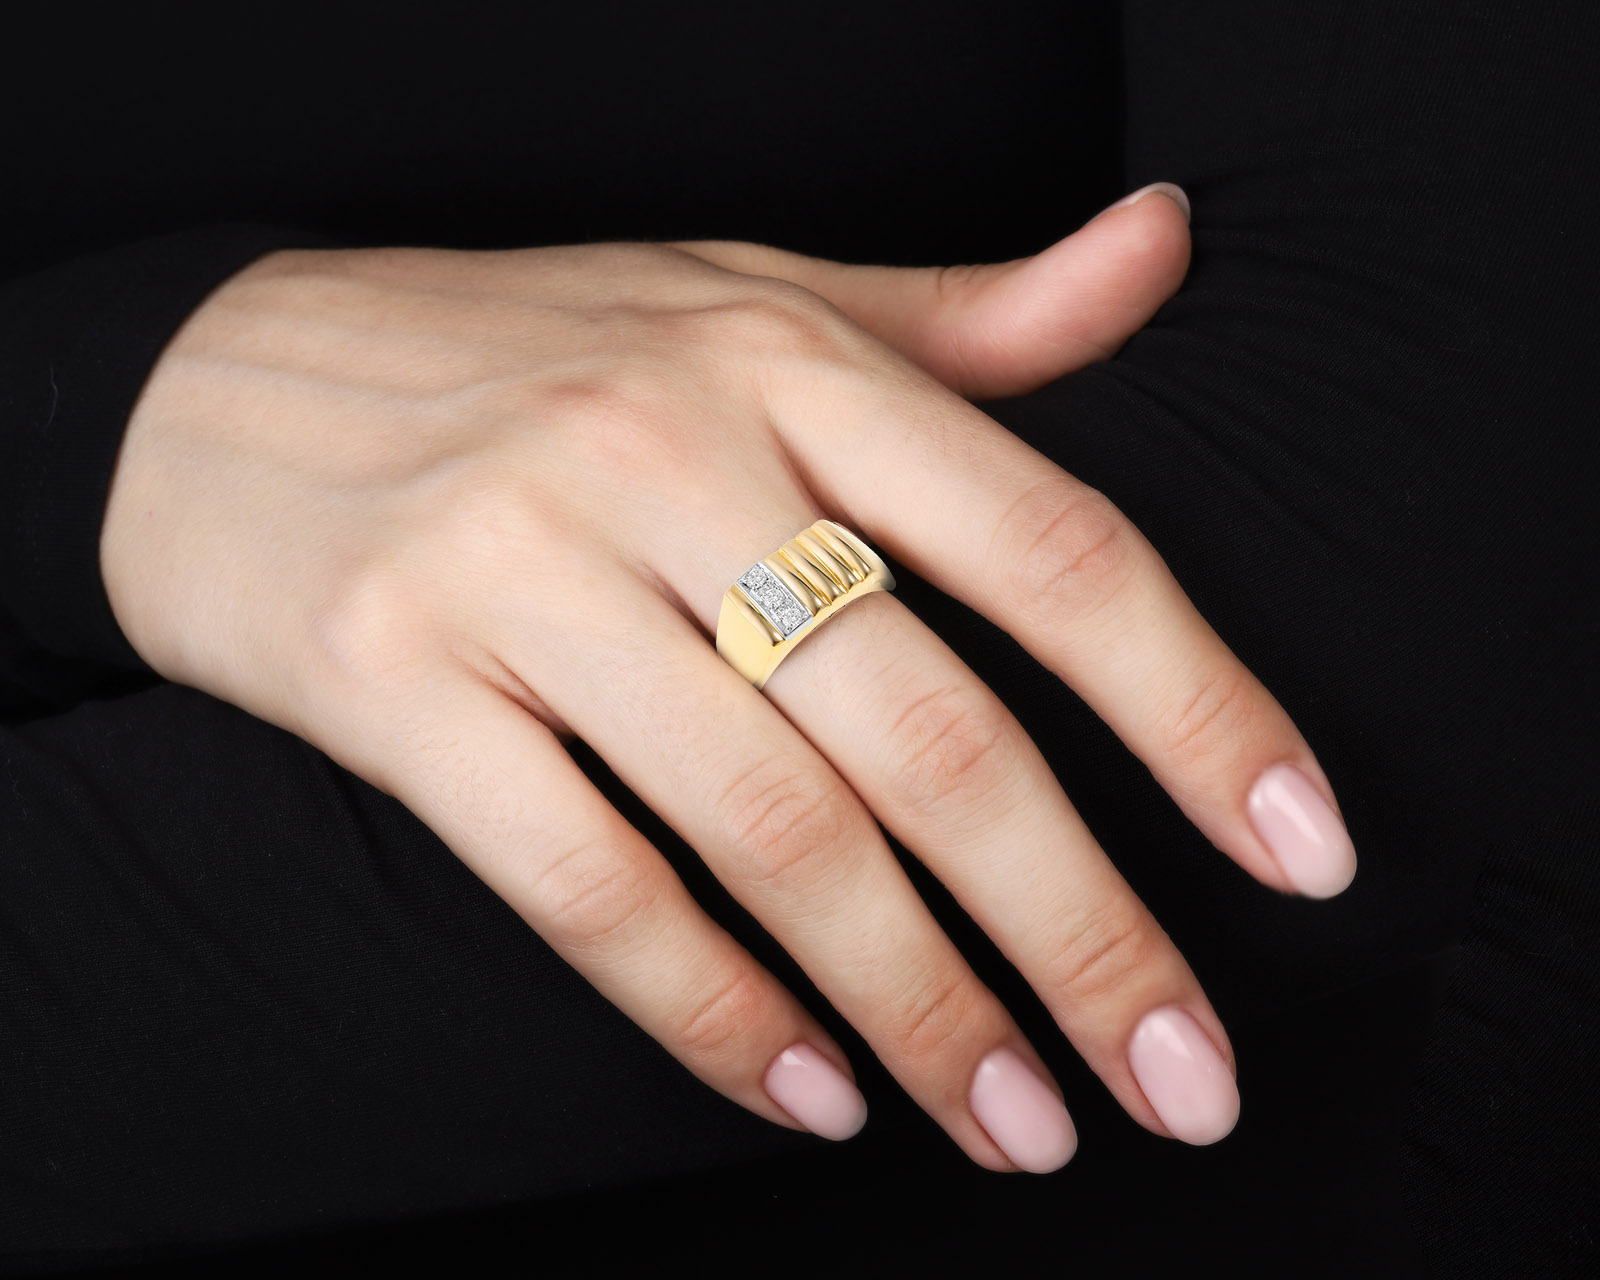 Оригинальное золотое кольцо с бриллиантами 0.10ct Damiani